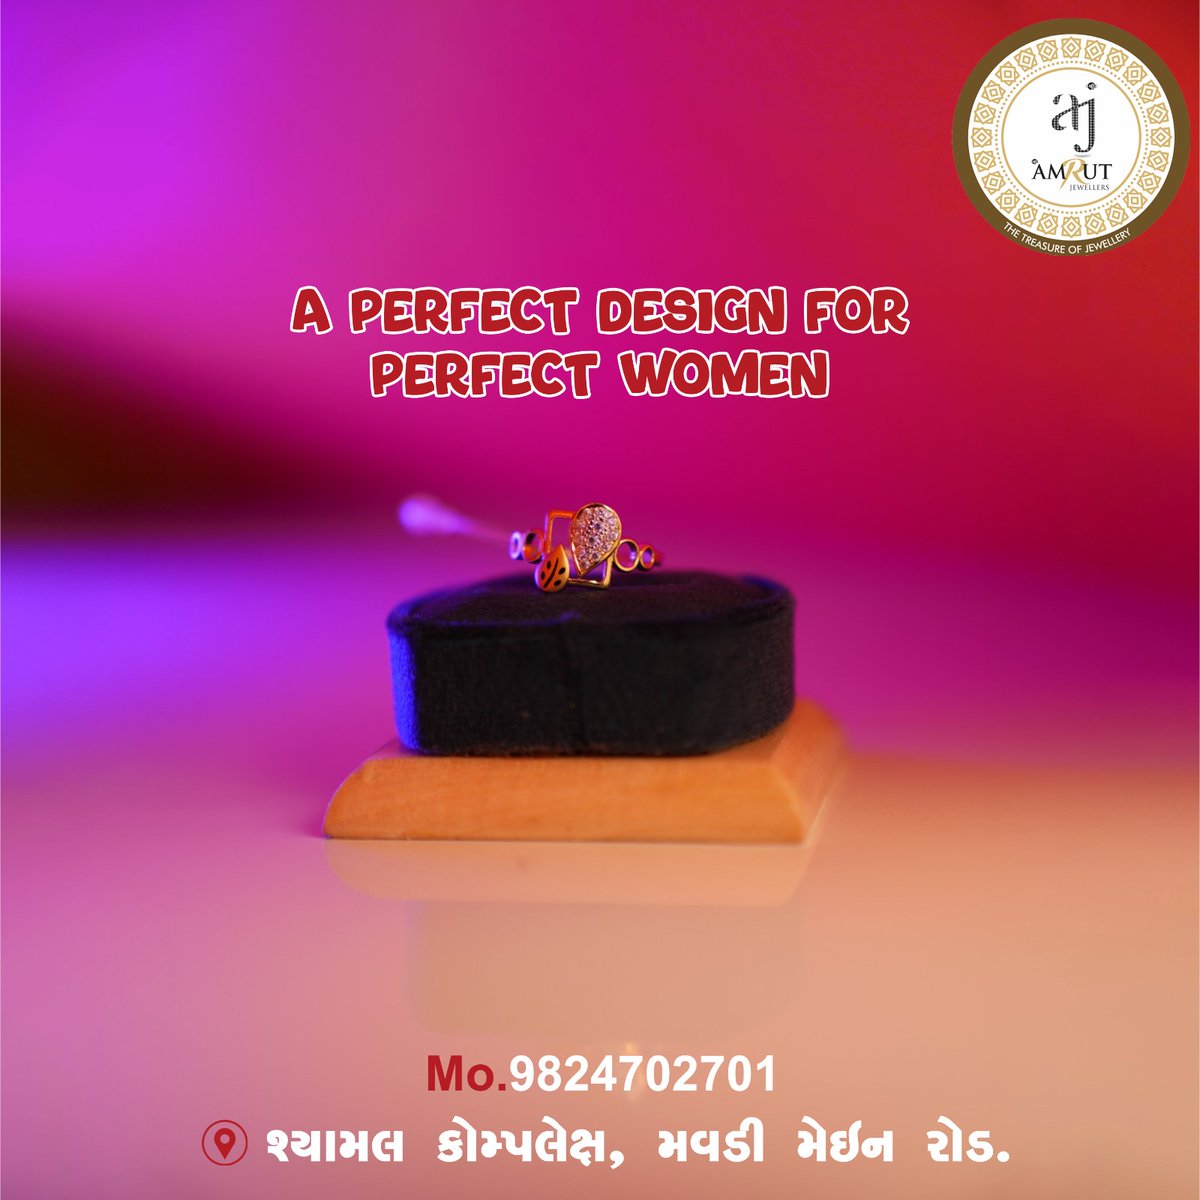 #amrutjewellers #rings #goldring #NewCollection #ringsforwomen  #ringscollection #ringsoftheday #ringsofinstagram #bestjewellery #bestdesign #ringstagram #elegantjewellery #jewellery #jewelleryshop #ring #prettylittlething #mavdi #rajkot #Gujarat